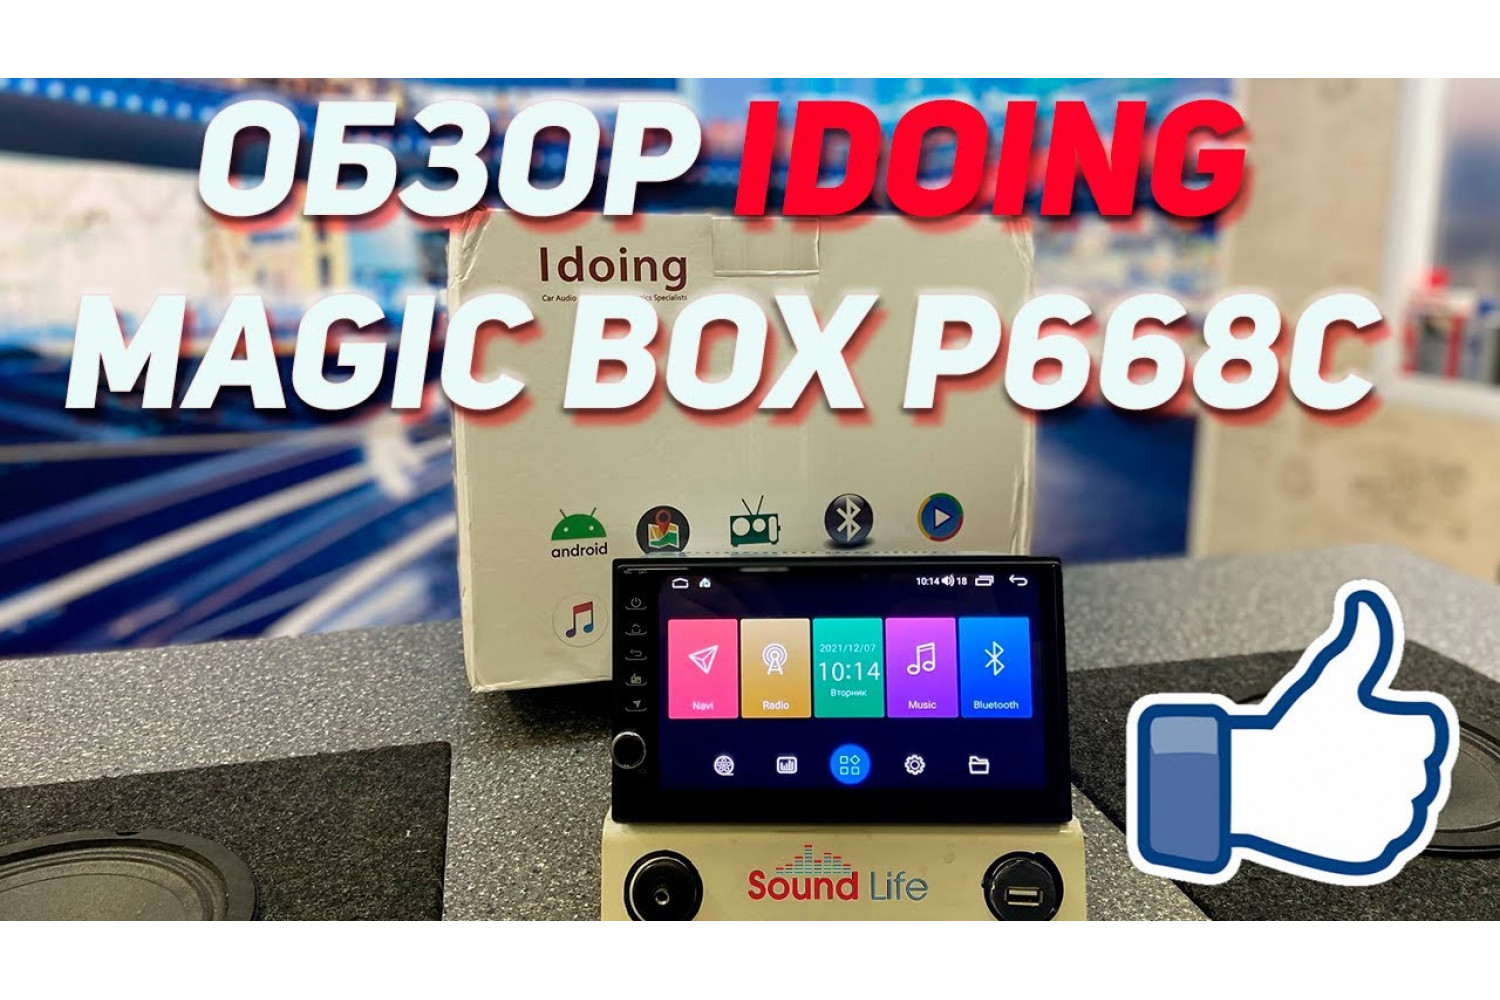 Обзор Idoing Magic Box P668C